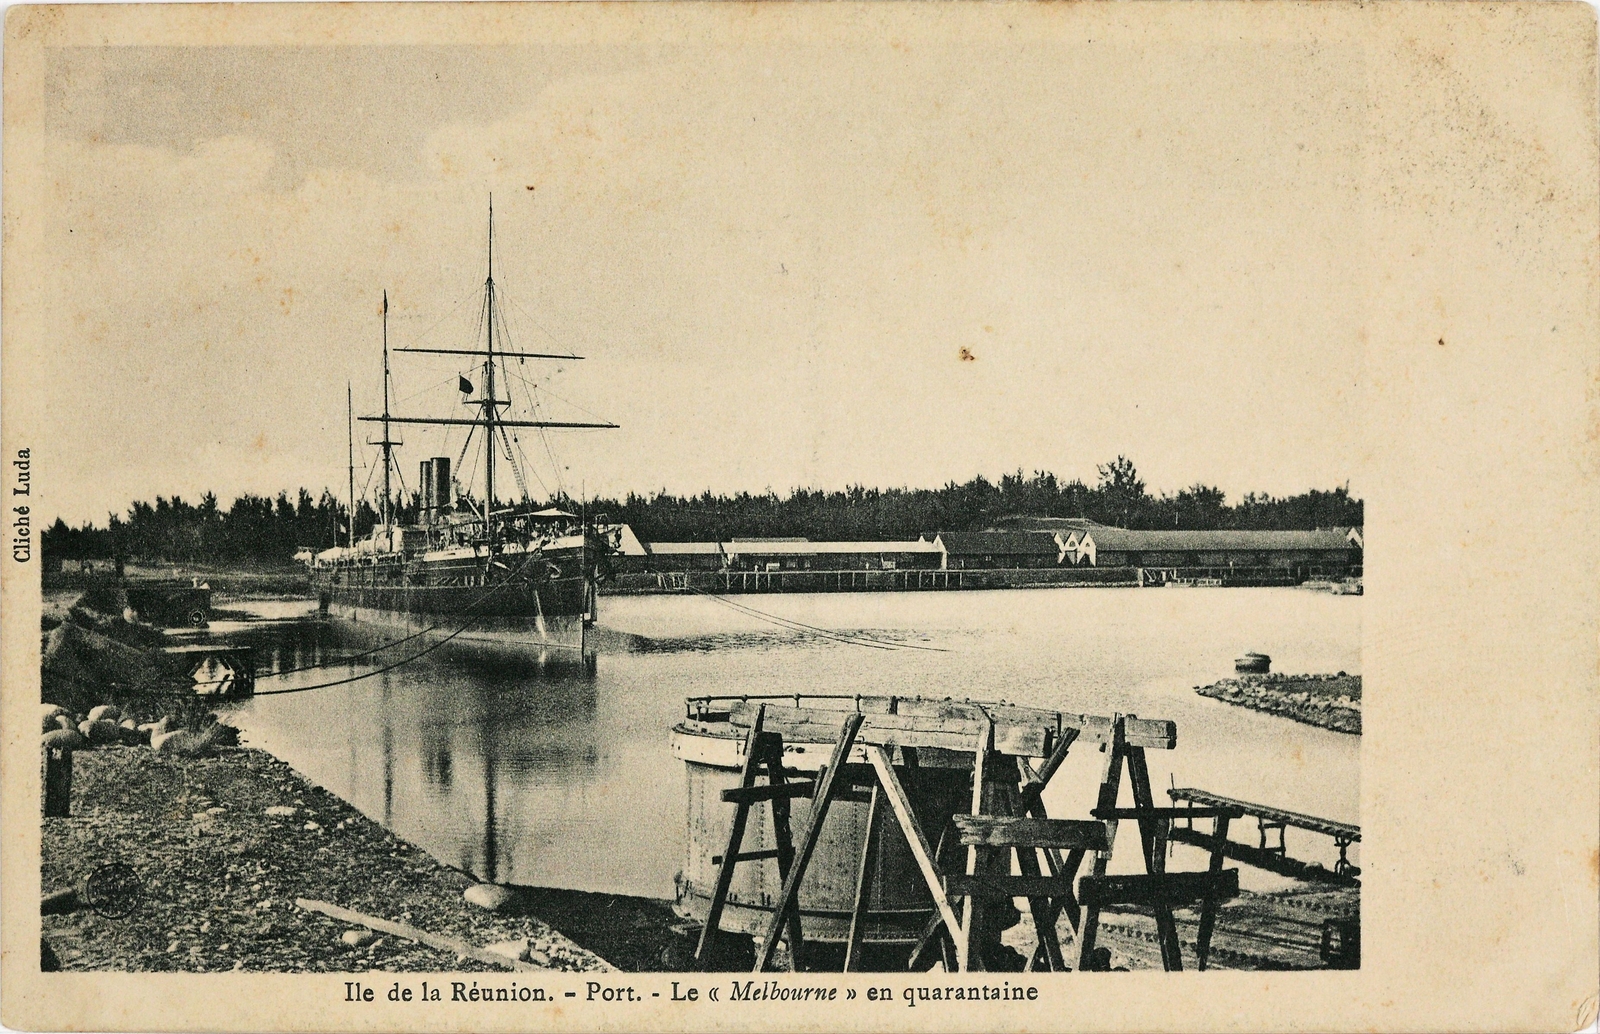 Le Port, Le Melbourne en quarantaine, photographie Luda, 1905-1910